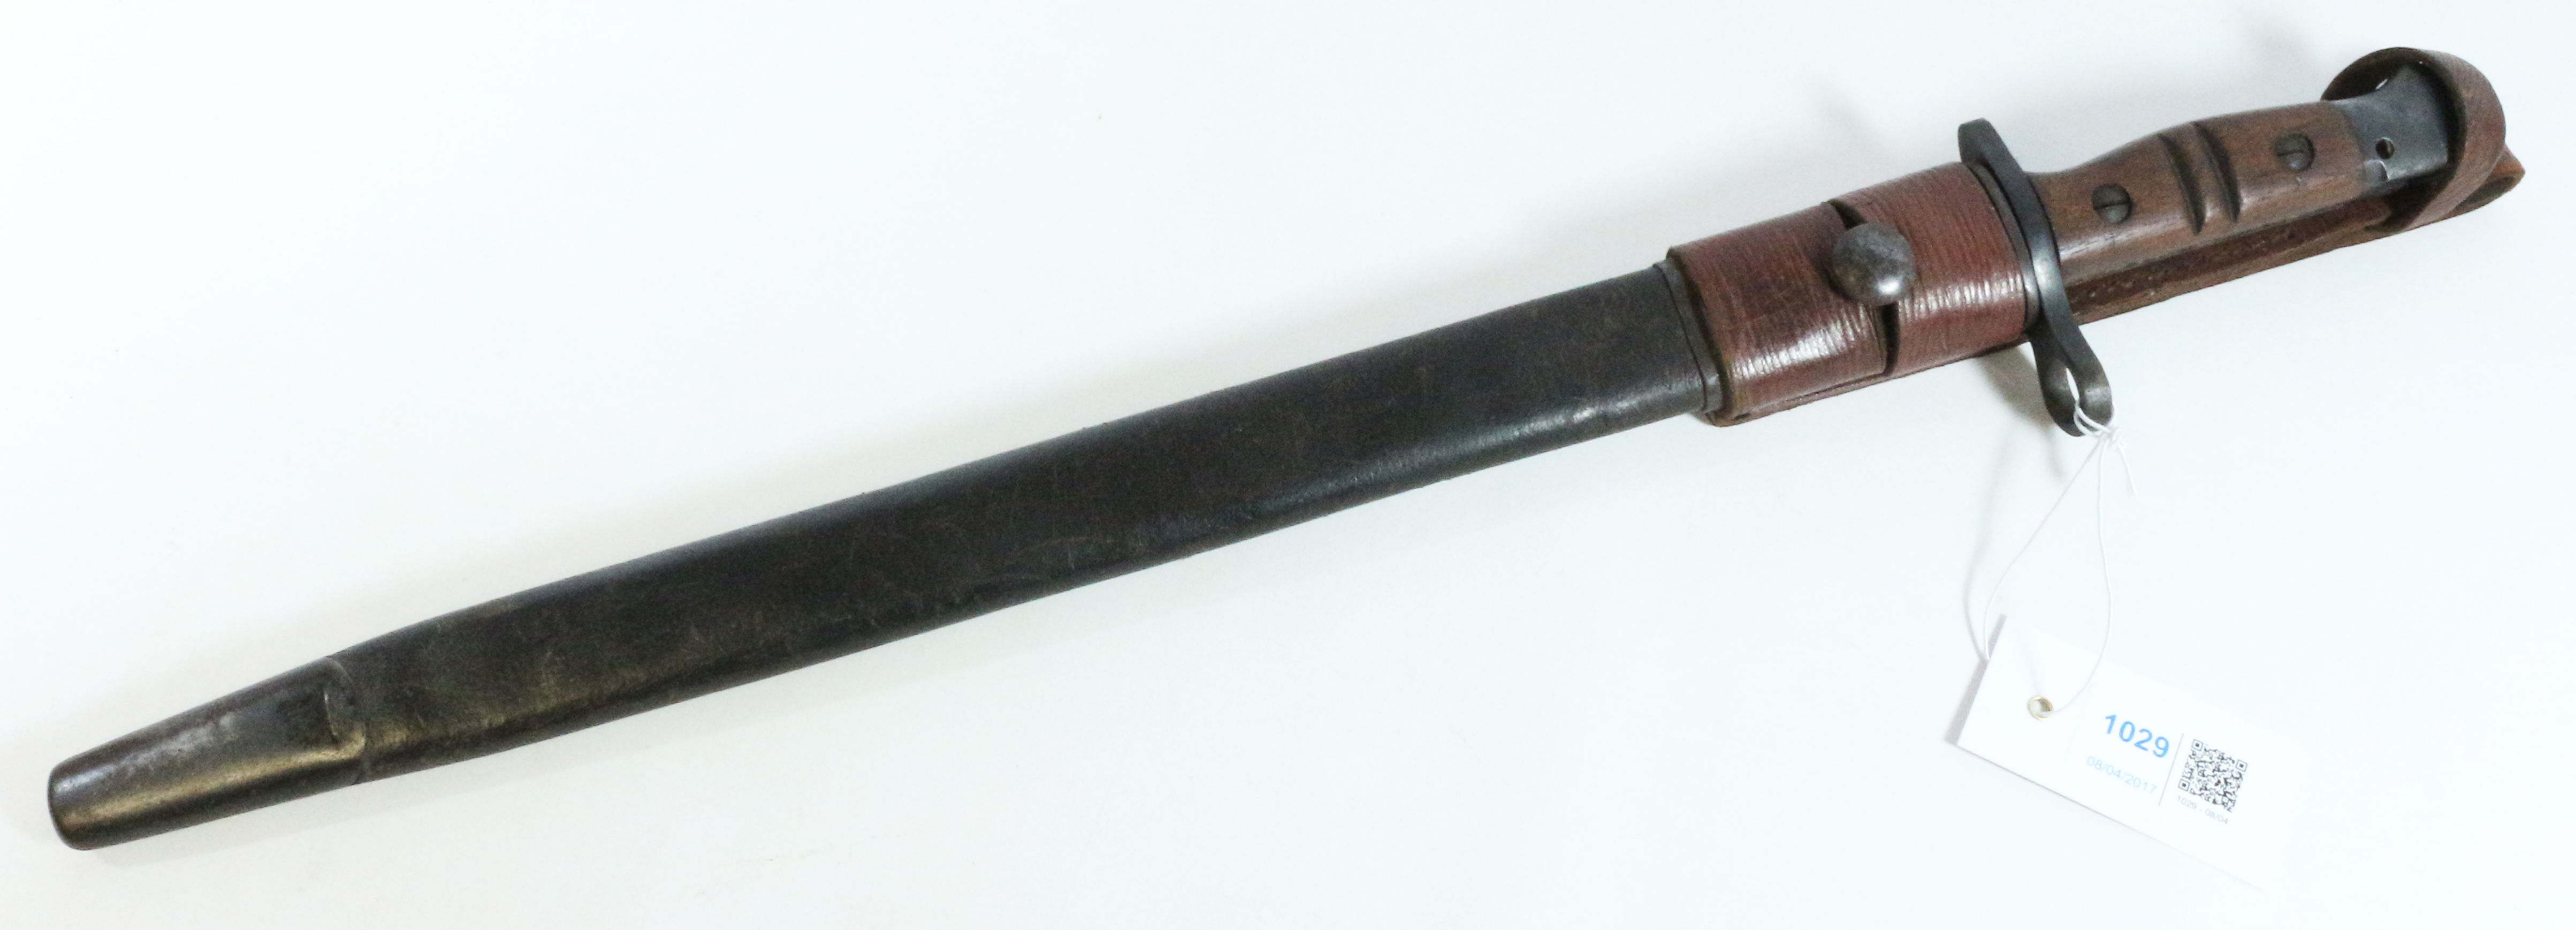 USA Remington 1917 pattern bayonet, 43cm blade,